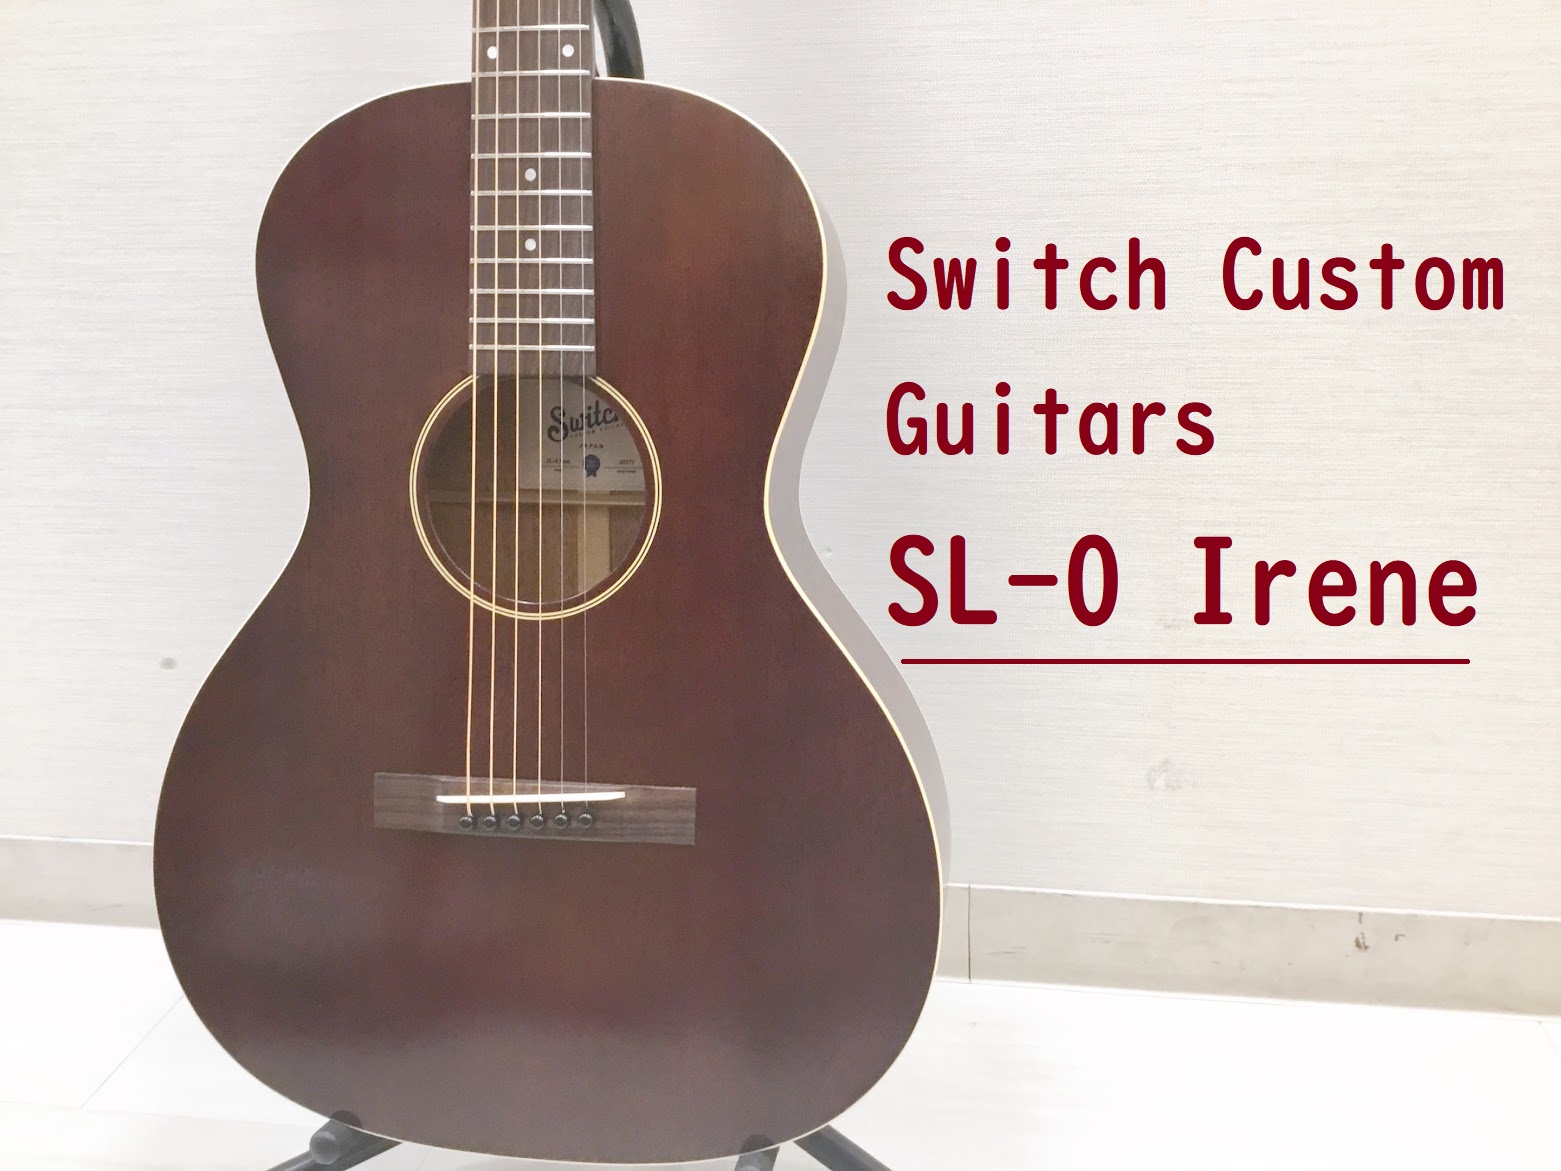 島村楽器大分店に、Switch Custom Guitars(スウィッチカスタムギターズ)のアコースティックギター『SL-0 Irene』が入荷致しました。 1930年代のL-0をモチーフにしたSL-0 Irene。ヴィンテージの色合いを再現しつつ、極限まで操作性を高めた最強コンパクト・モデル。 極 […]